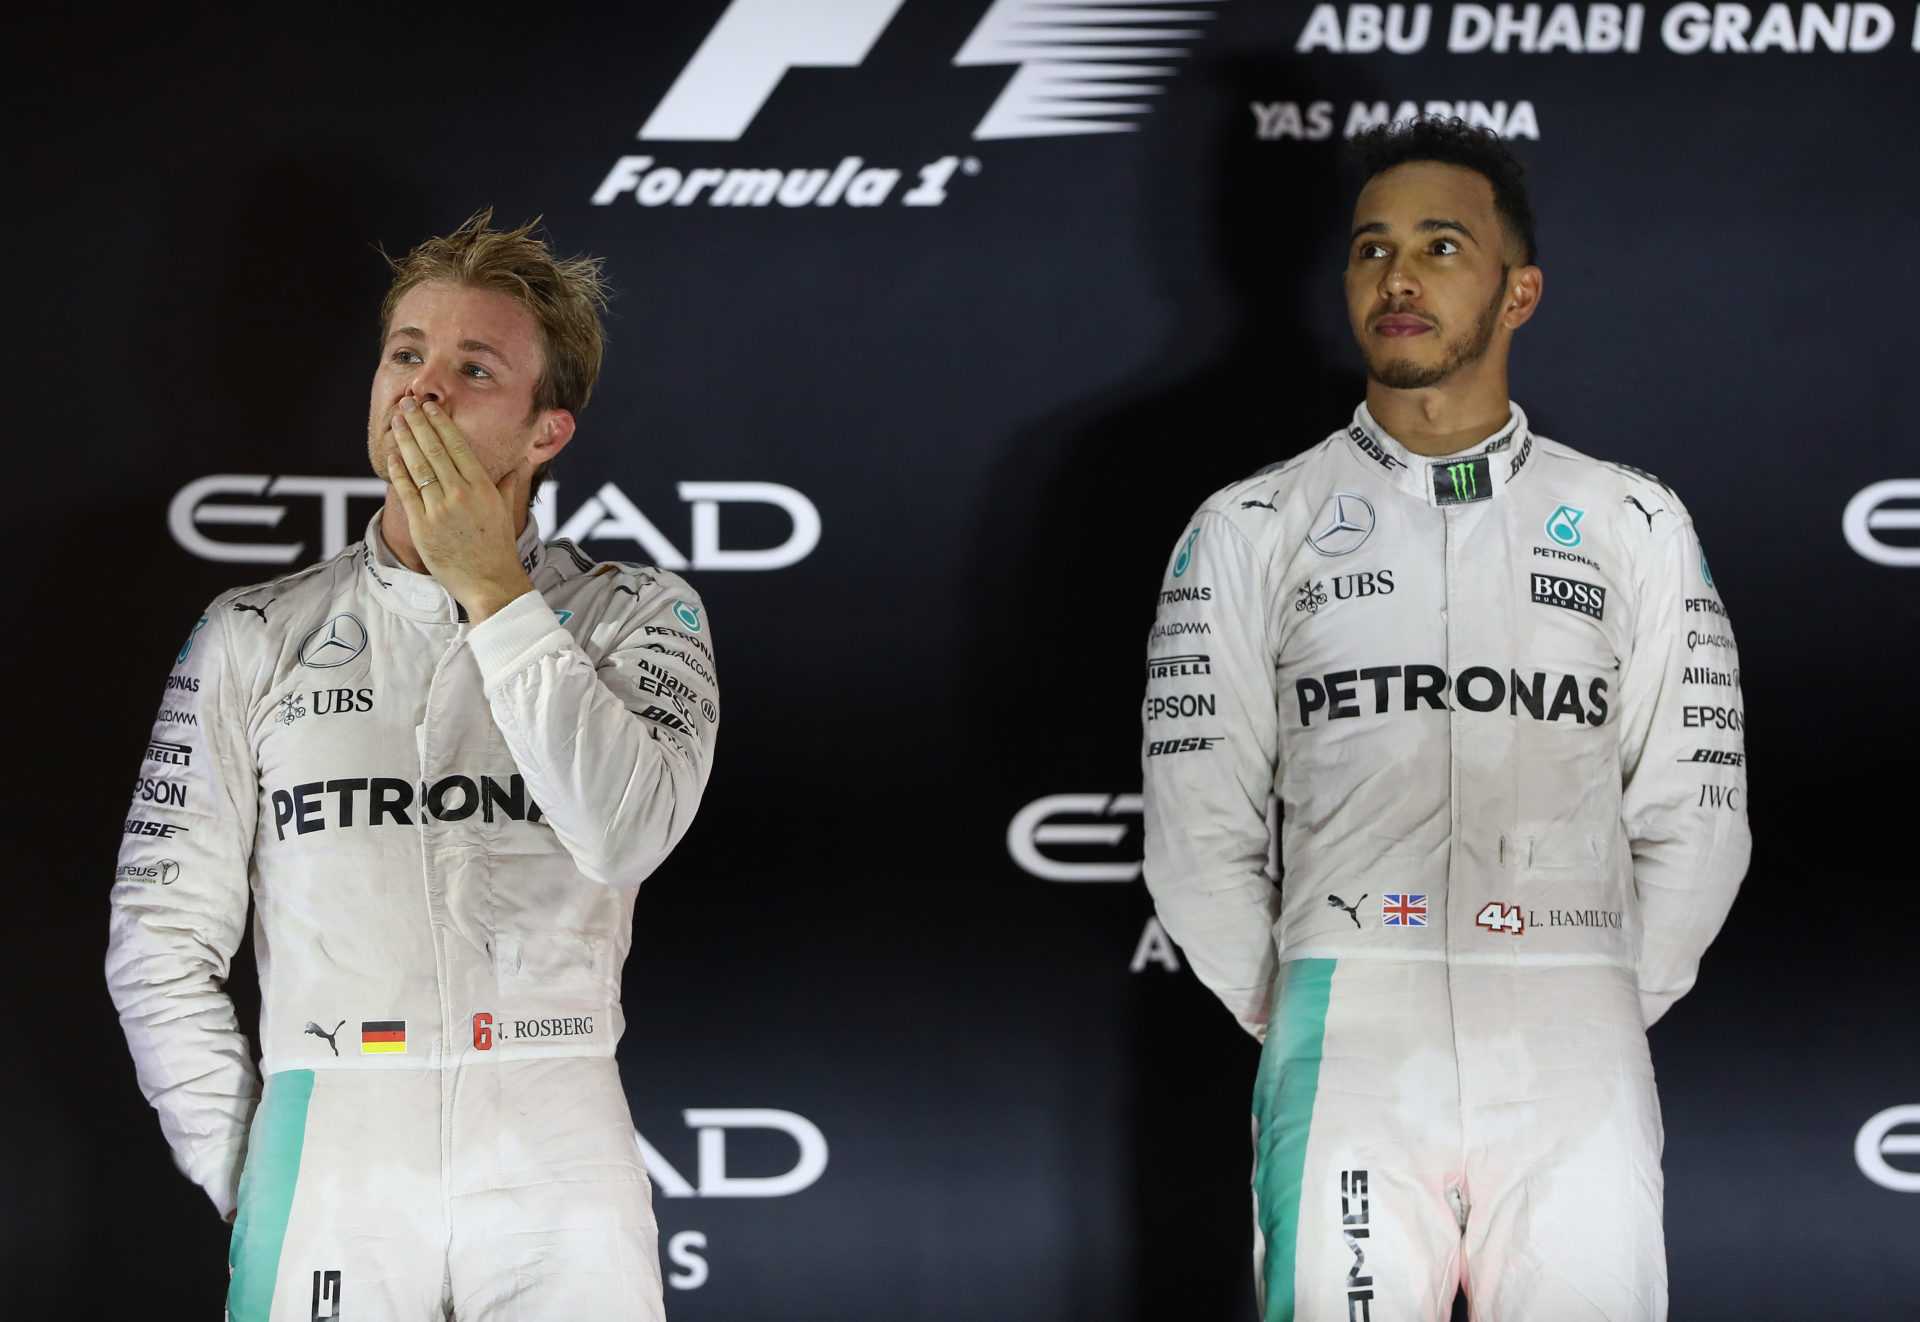 Ne permettrait plus jamais une situation de Lewis Hamilton-Nico Rosberg chez Mercedes: Wolff